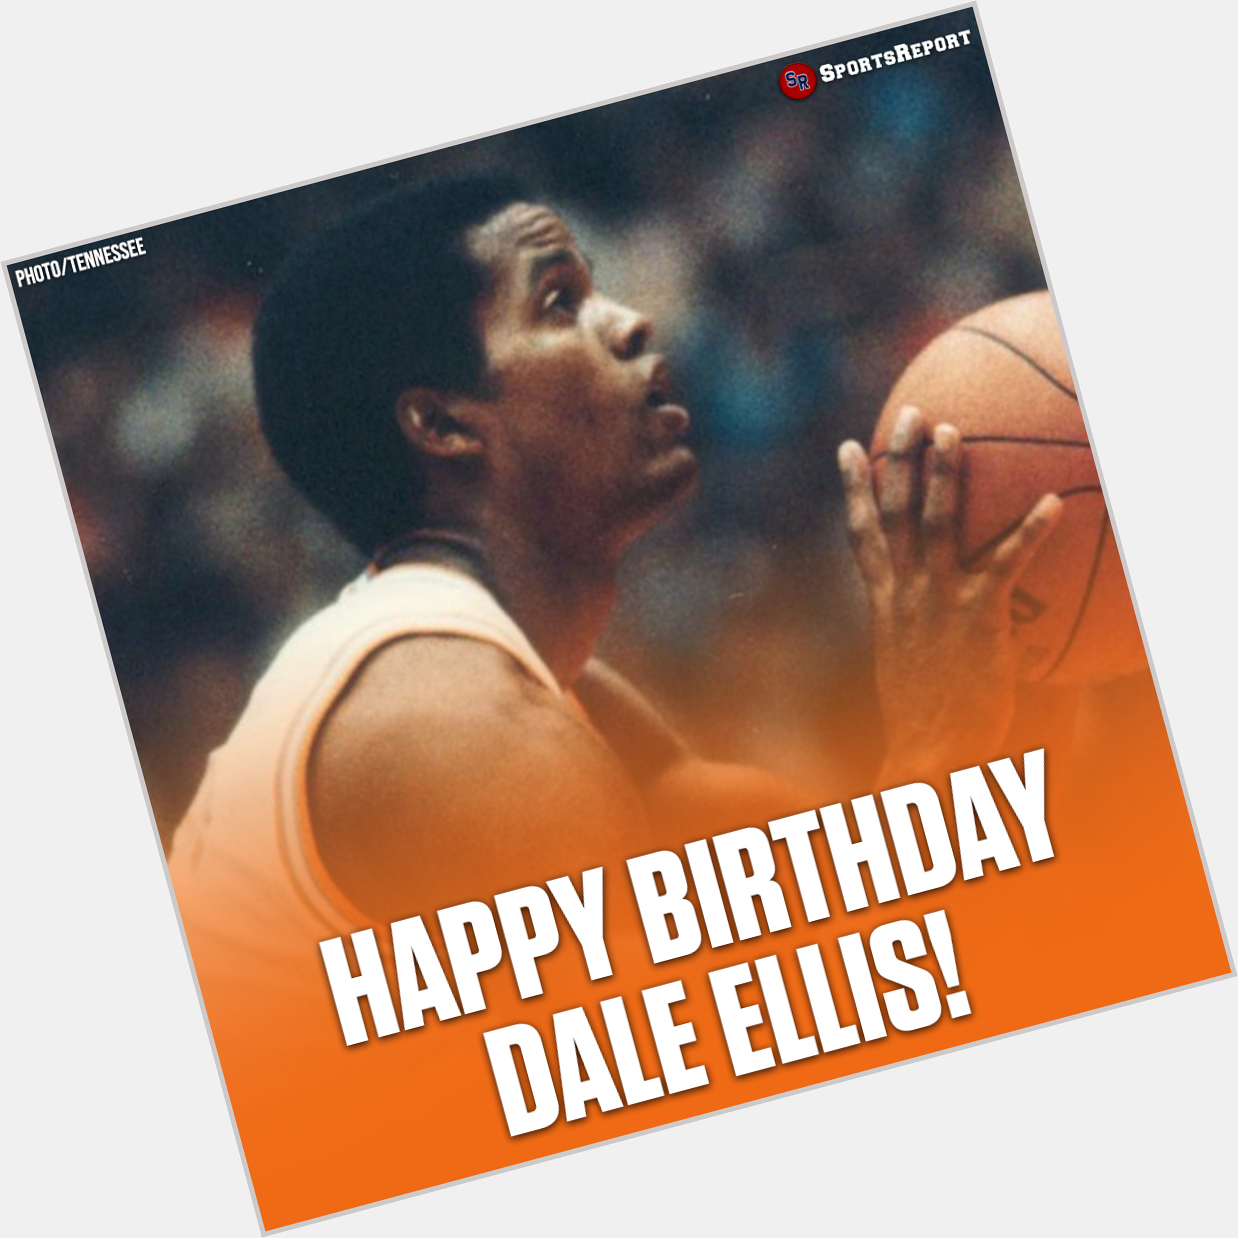  Fans, let\s wish Legend Dale Ellis a Happy Birthday! 